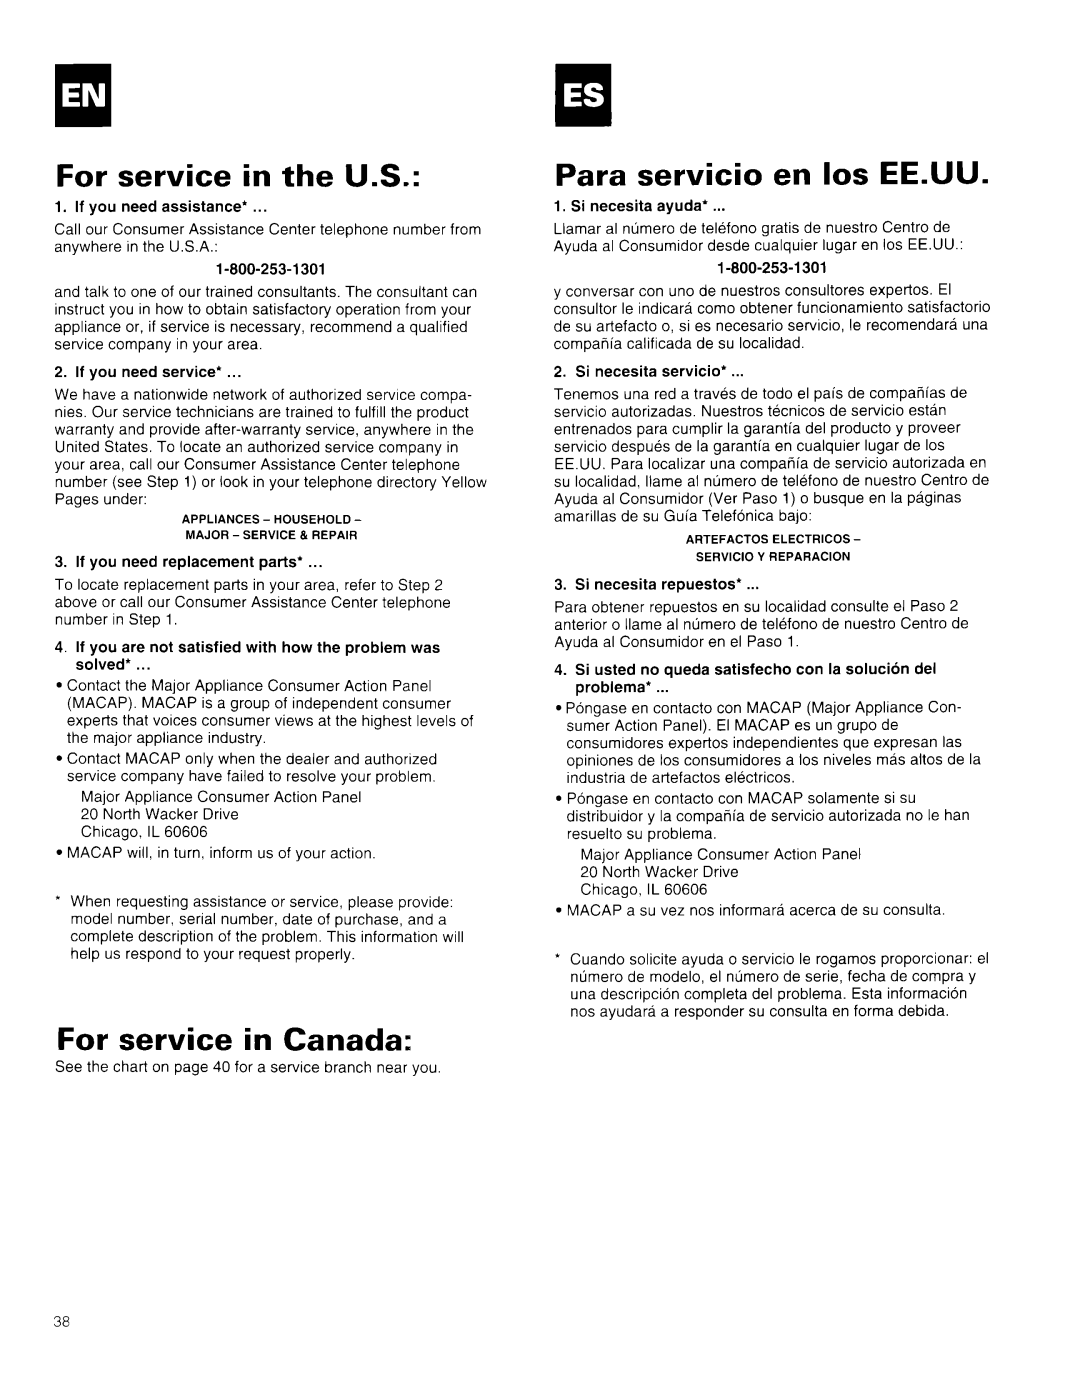 Whirlpool AR1800XA0 manual For service in the U.S, For service in Canada, Para servicio en 10s EEAJU 